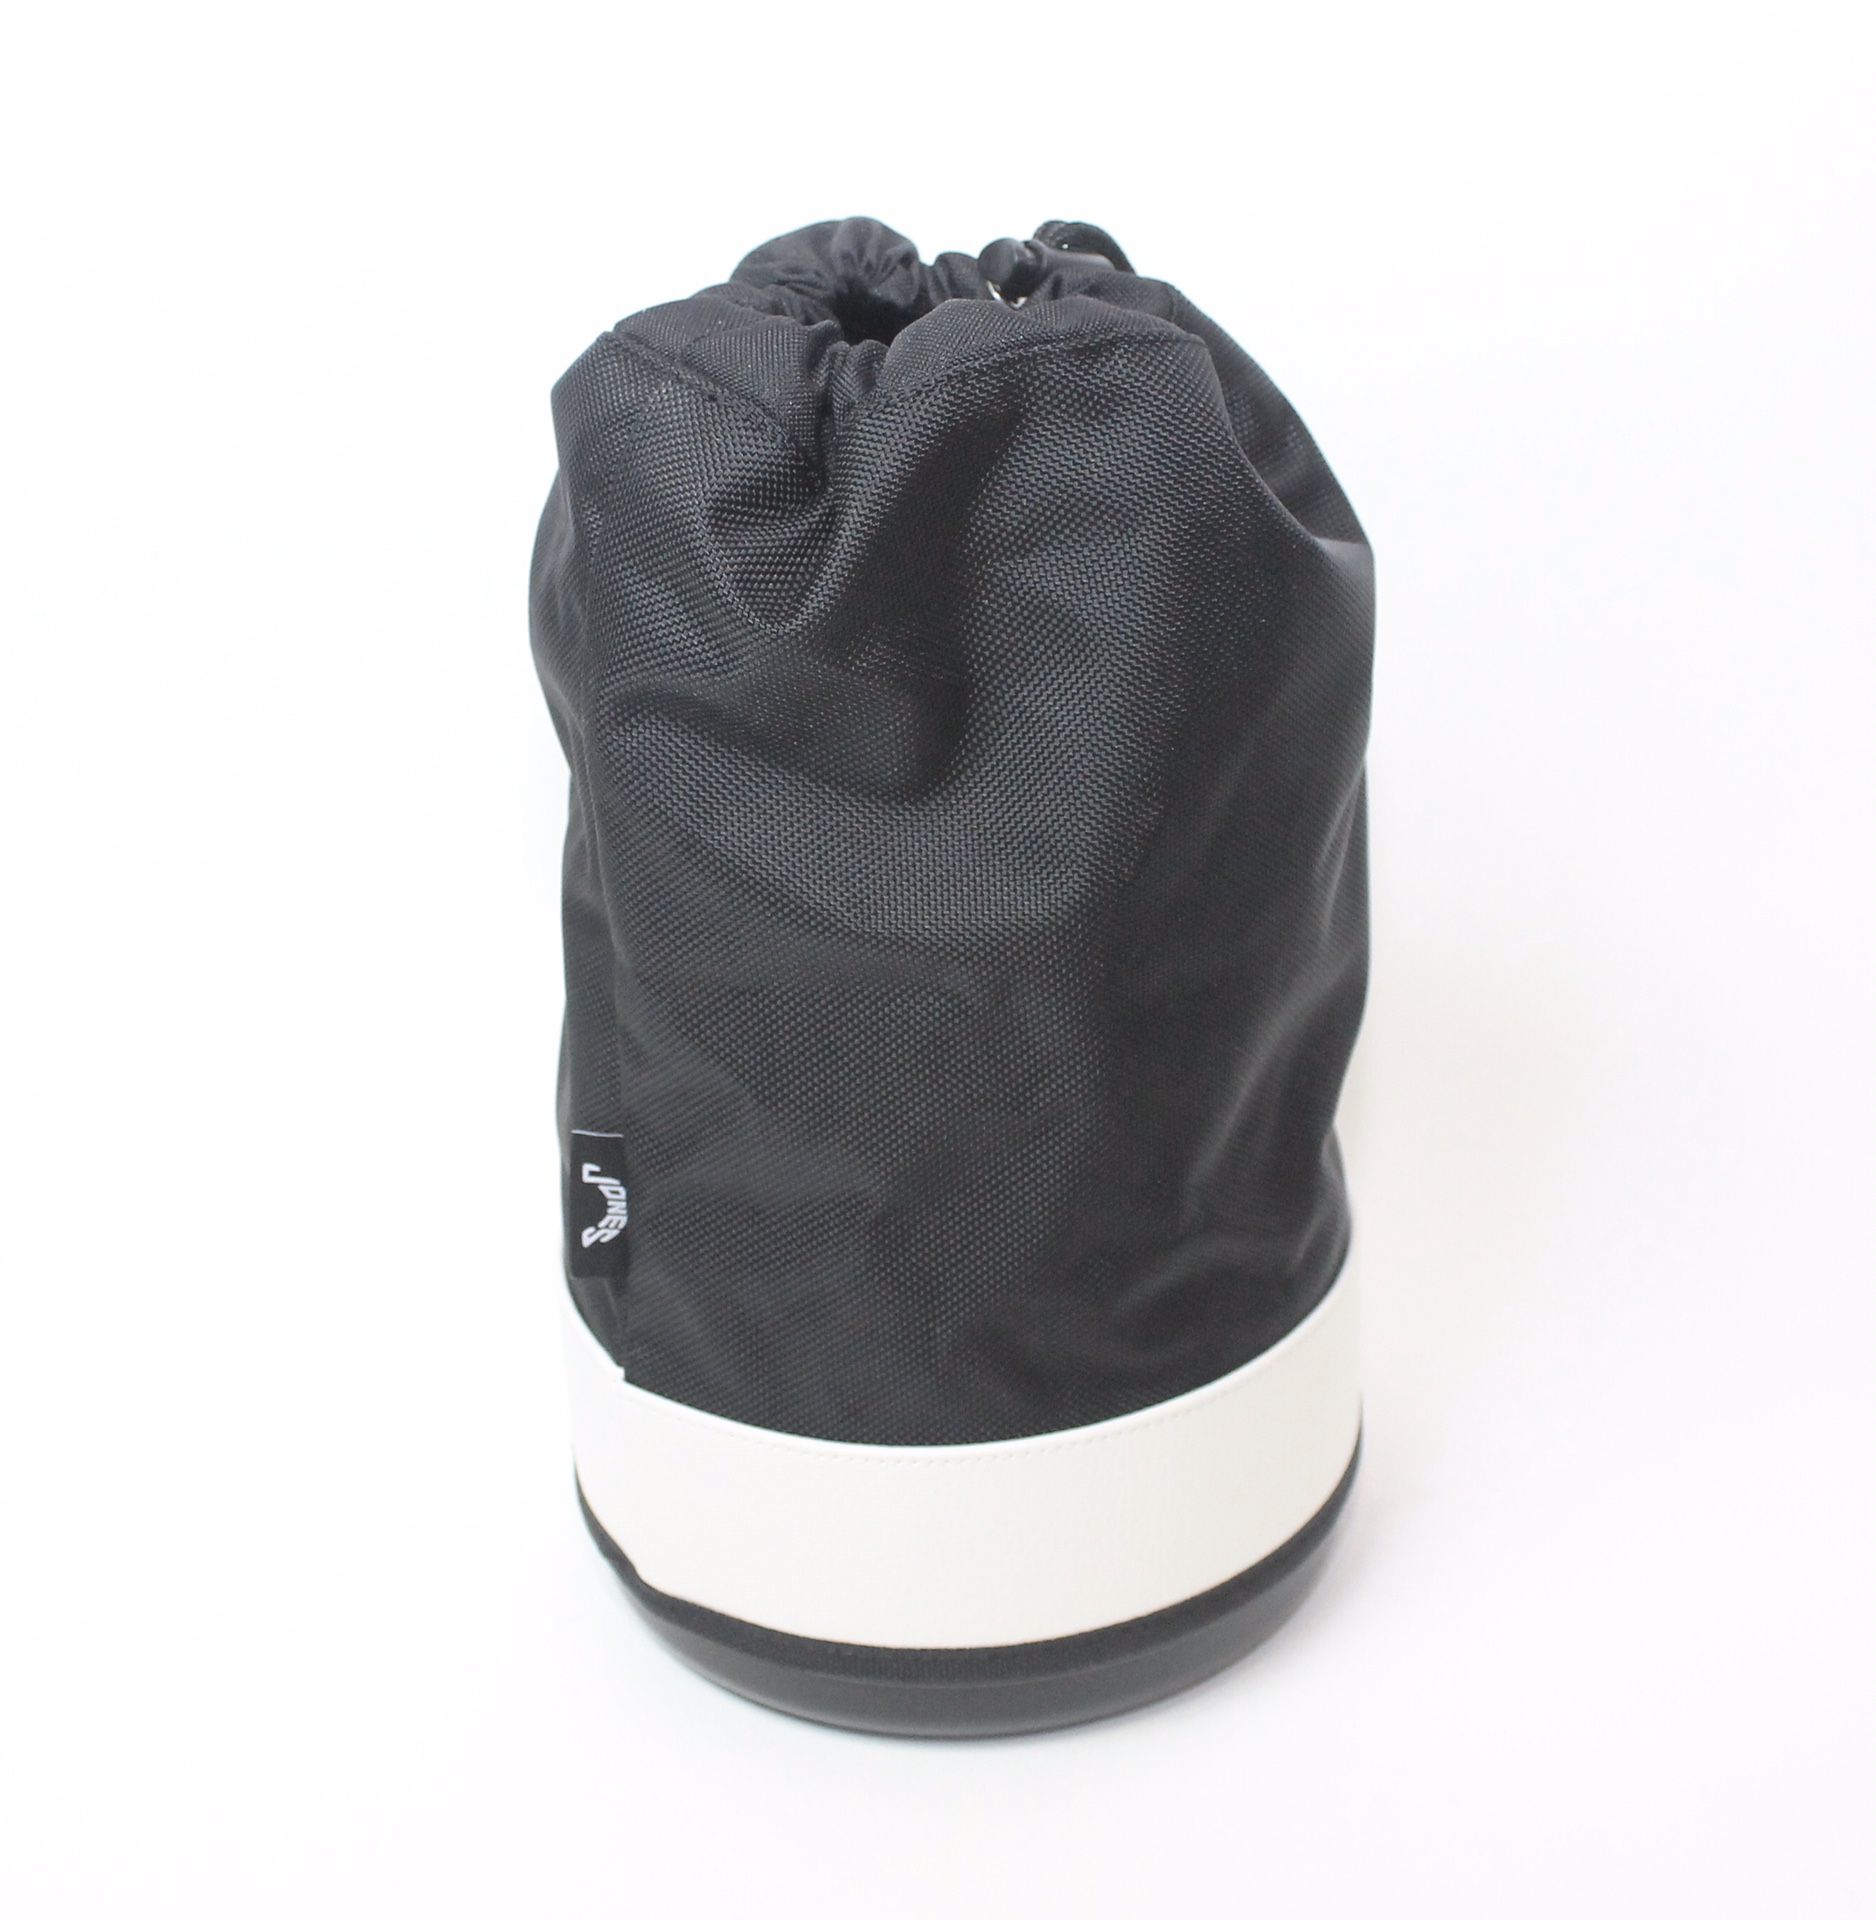 Jones Golf Shag Bag Cooler Black New fits 6 dozen balls